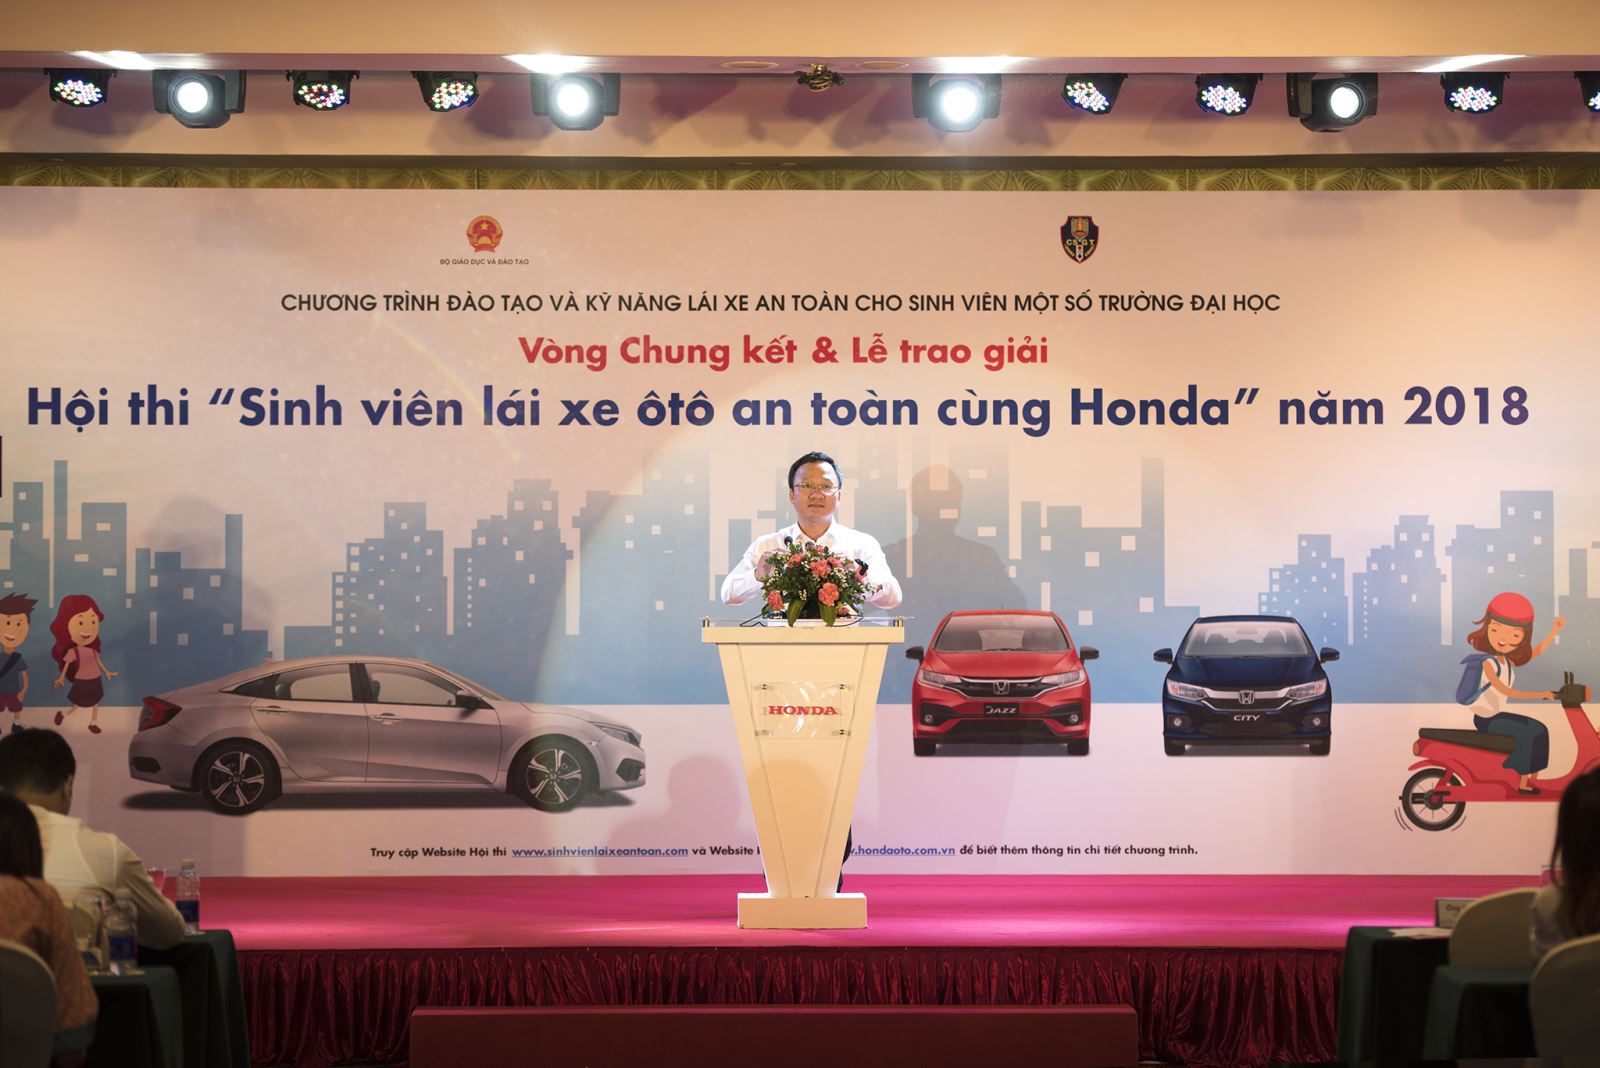 Sôi động Vòng chung kết Hội thi “Sinh viên lái xe ôtô an toàn cùng Honda năm 2018”